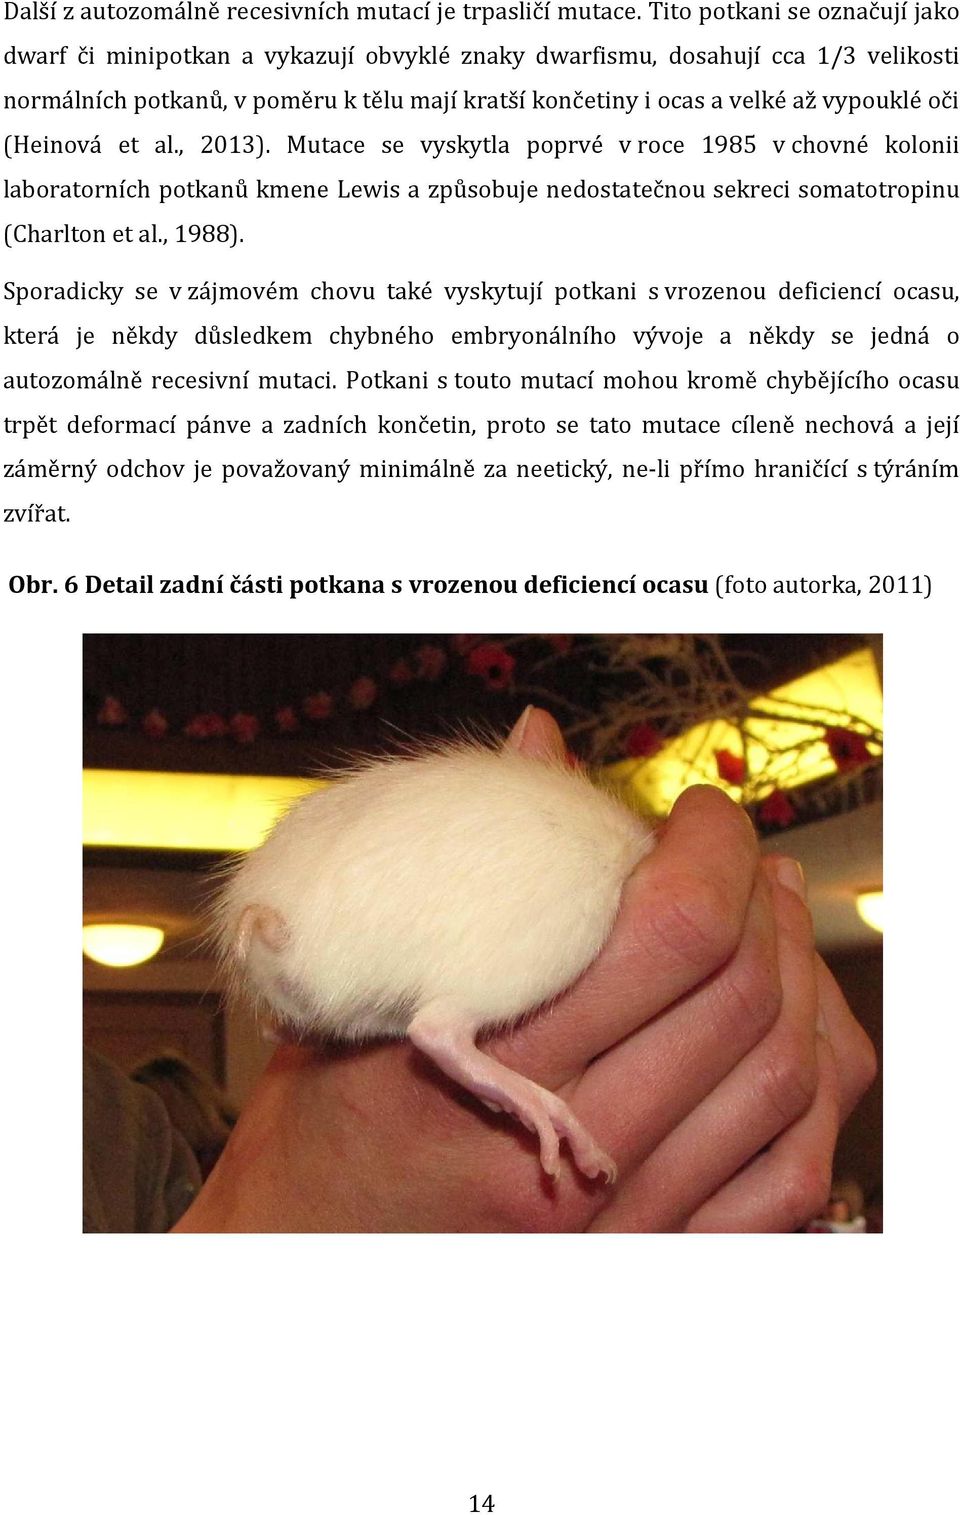 oči (Heinová et al., 2013). Mutace se vyskytla poprvé v roce 1985 v chovné kolonii laboratorních potkanů kmene Lewis a způsobuje nedostatečnou sekreci somatotropinu (Charlton et al., 1988).